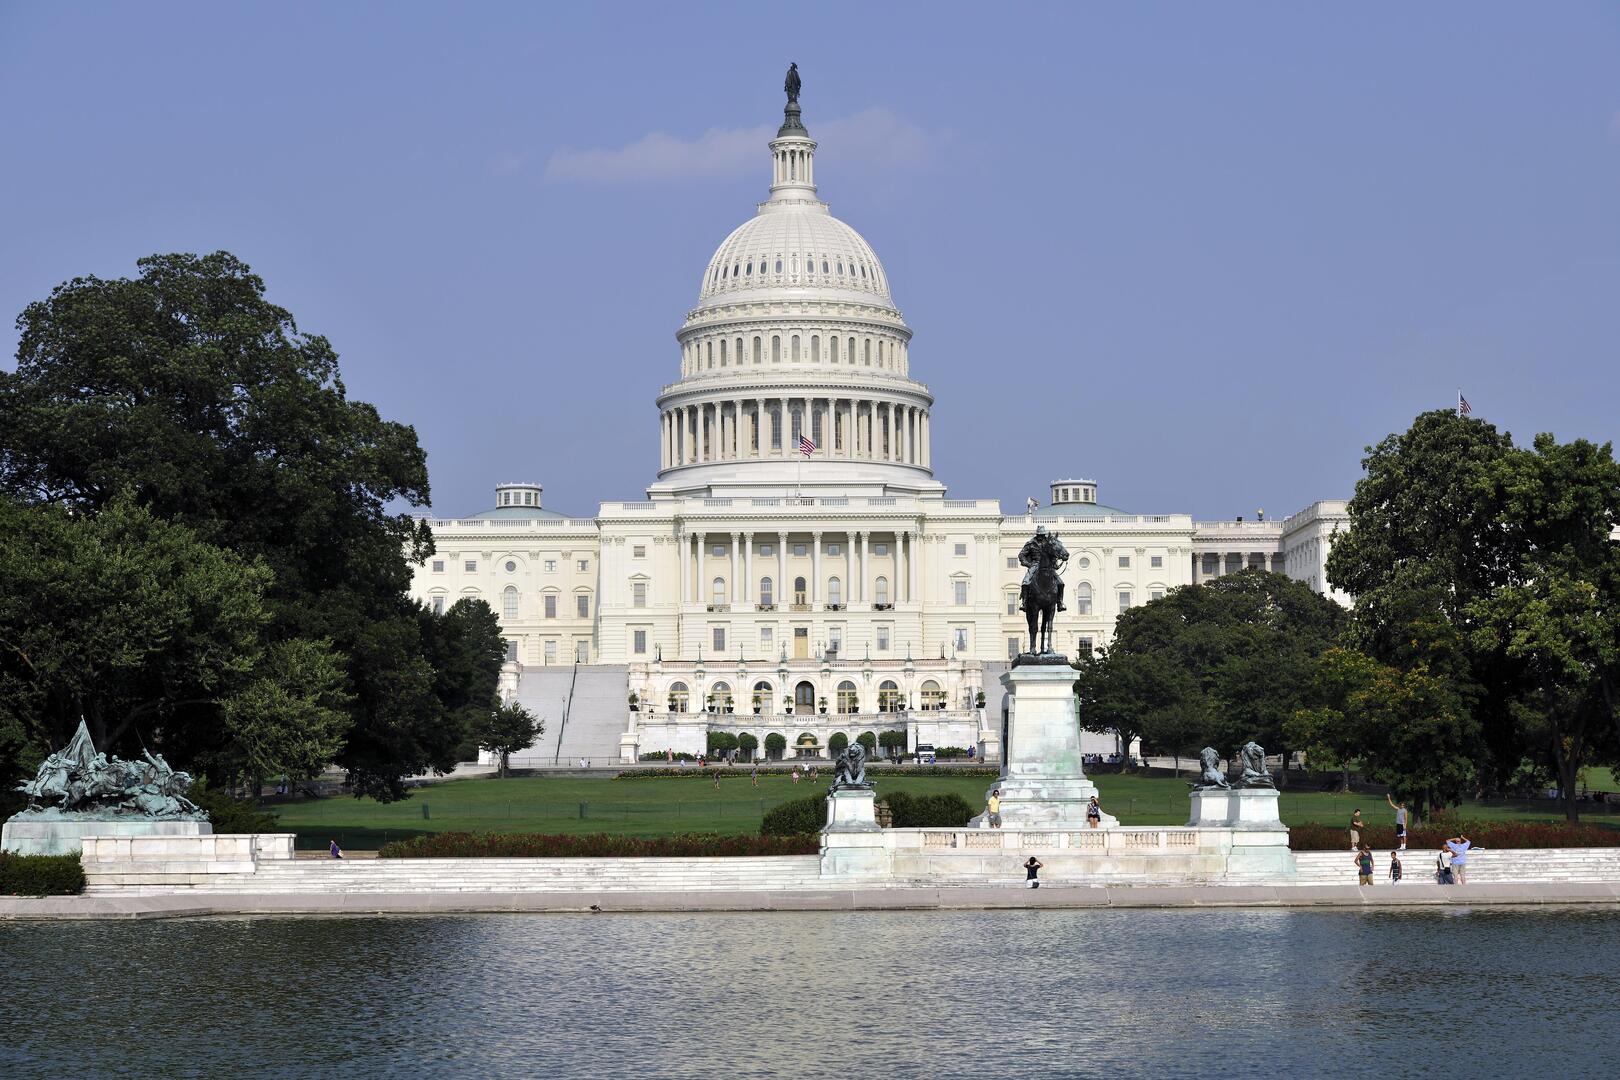 مجلس النواب الأمريكي يقر تشريعا لمواصلة تمويل عمل الإدارة